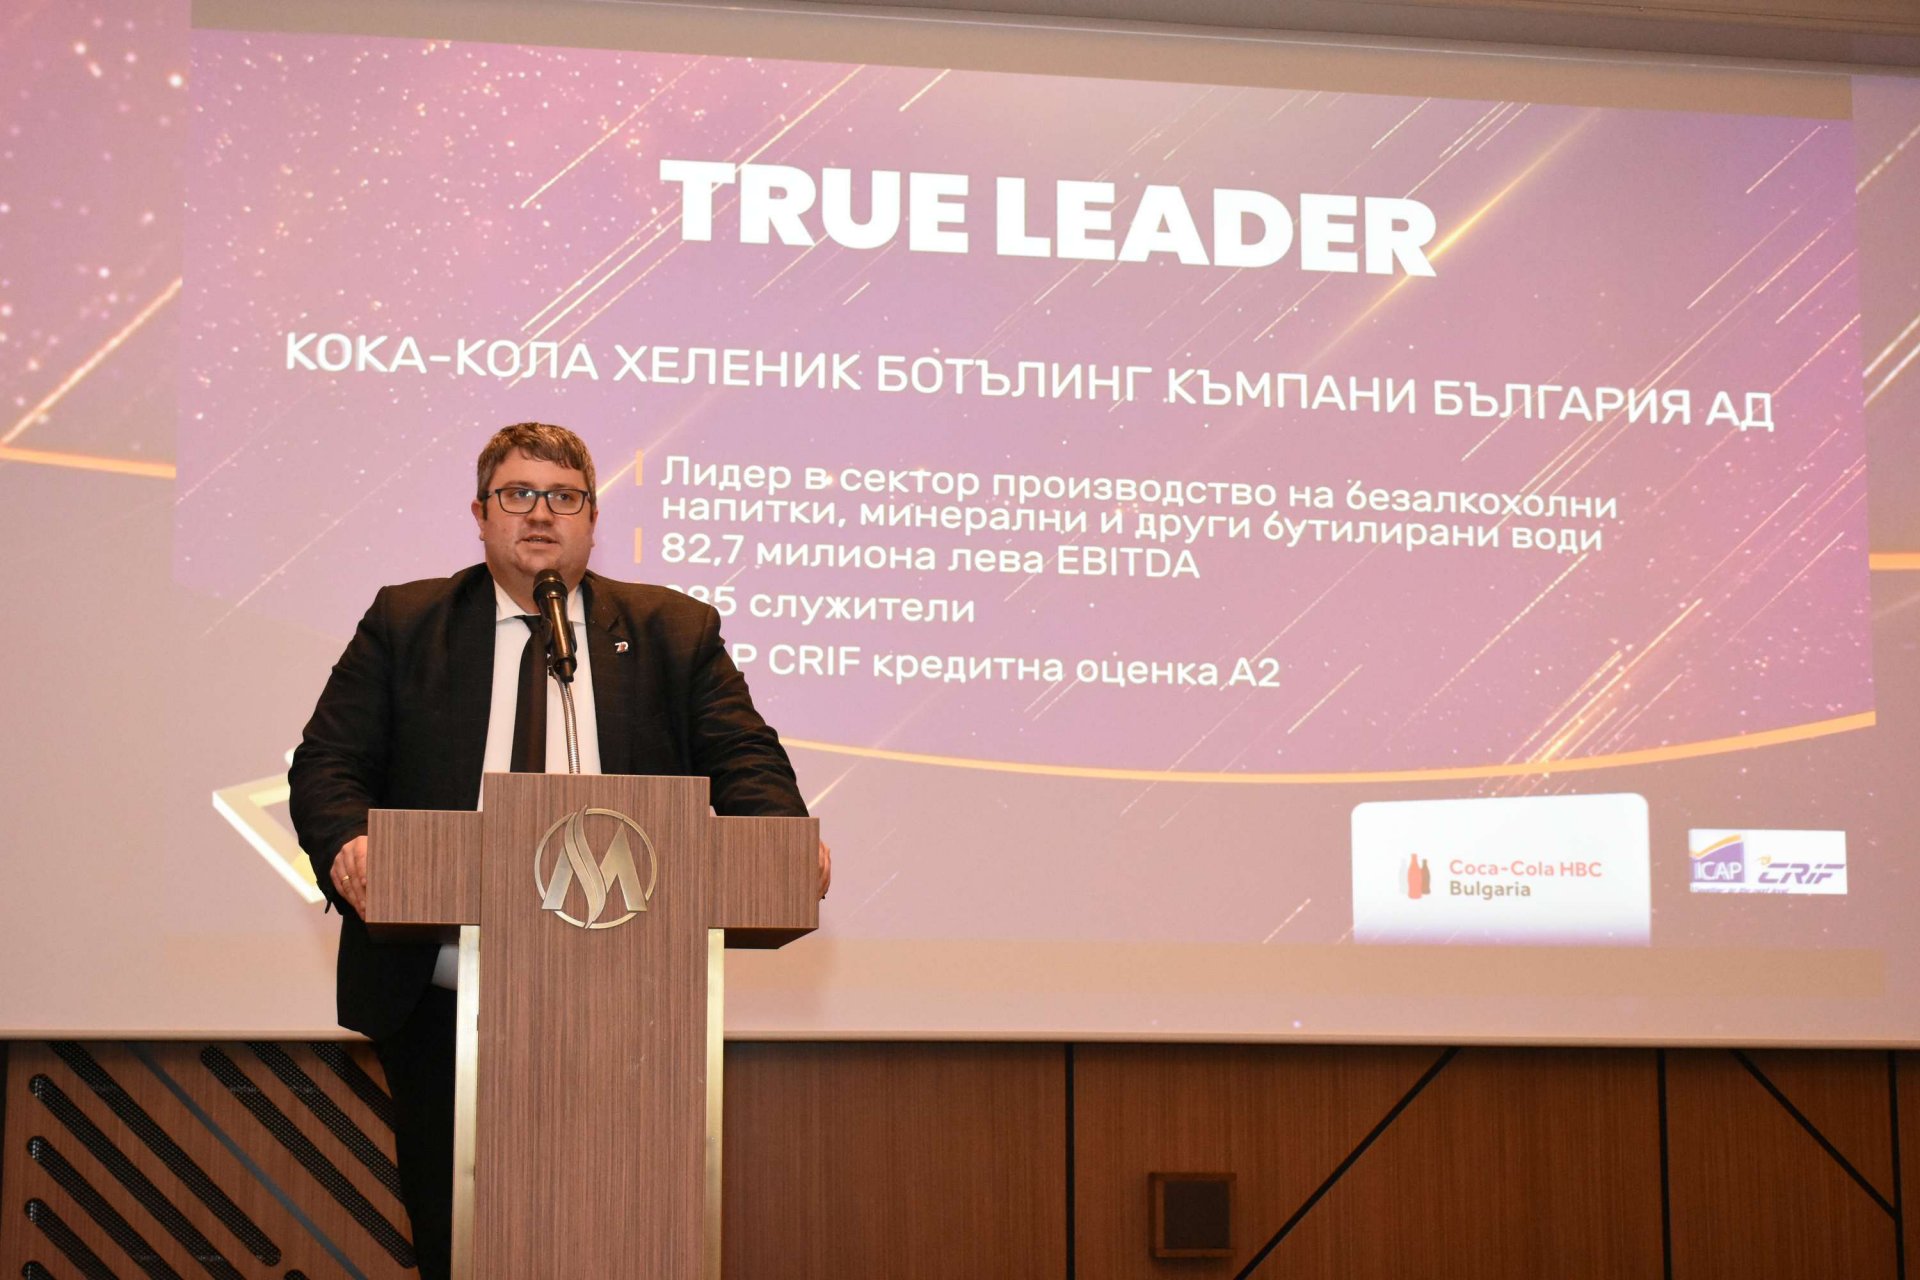 Стефан Гълъбов, финансов директор на Кока-Кола ХБК България